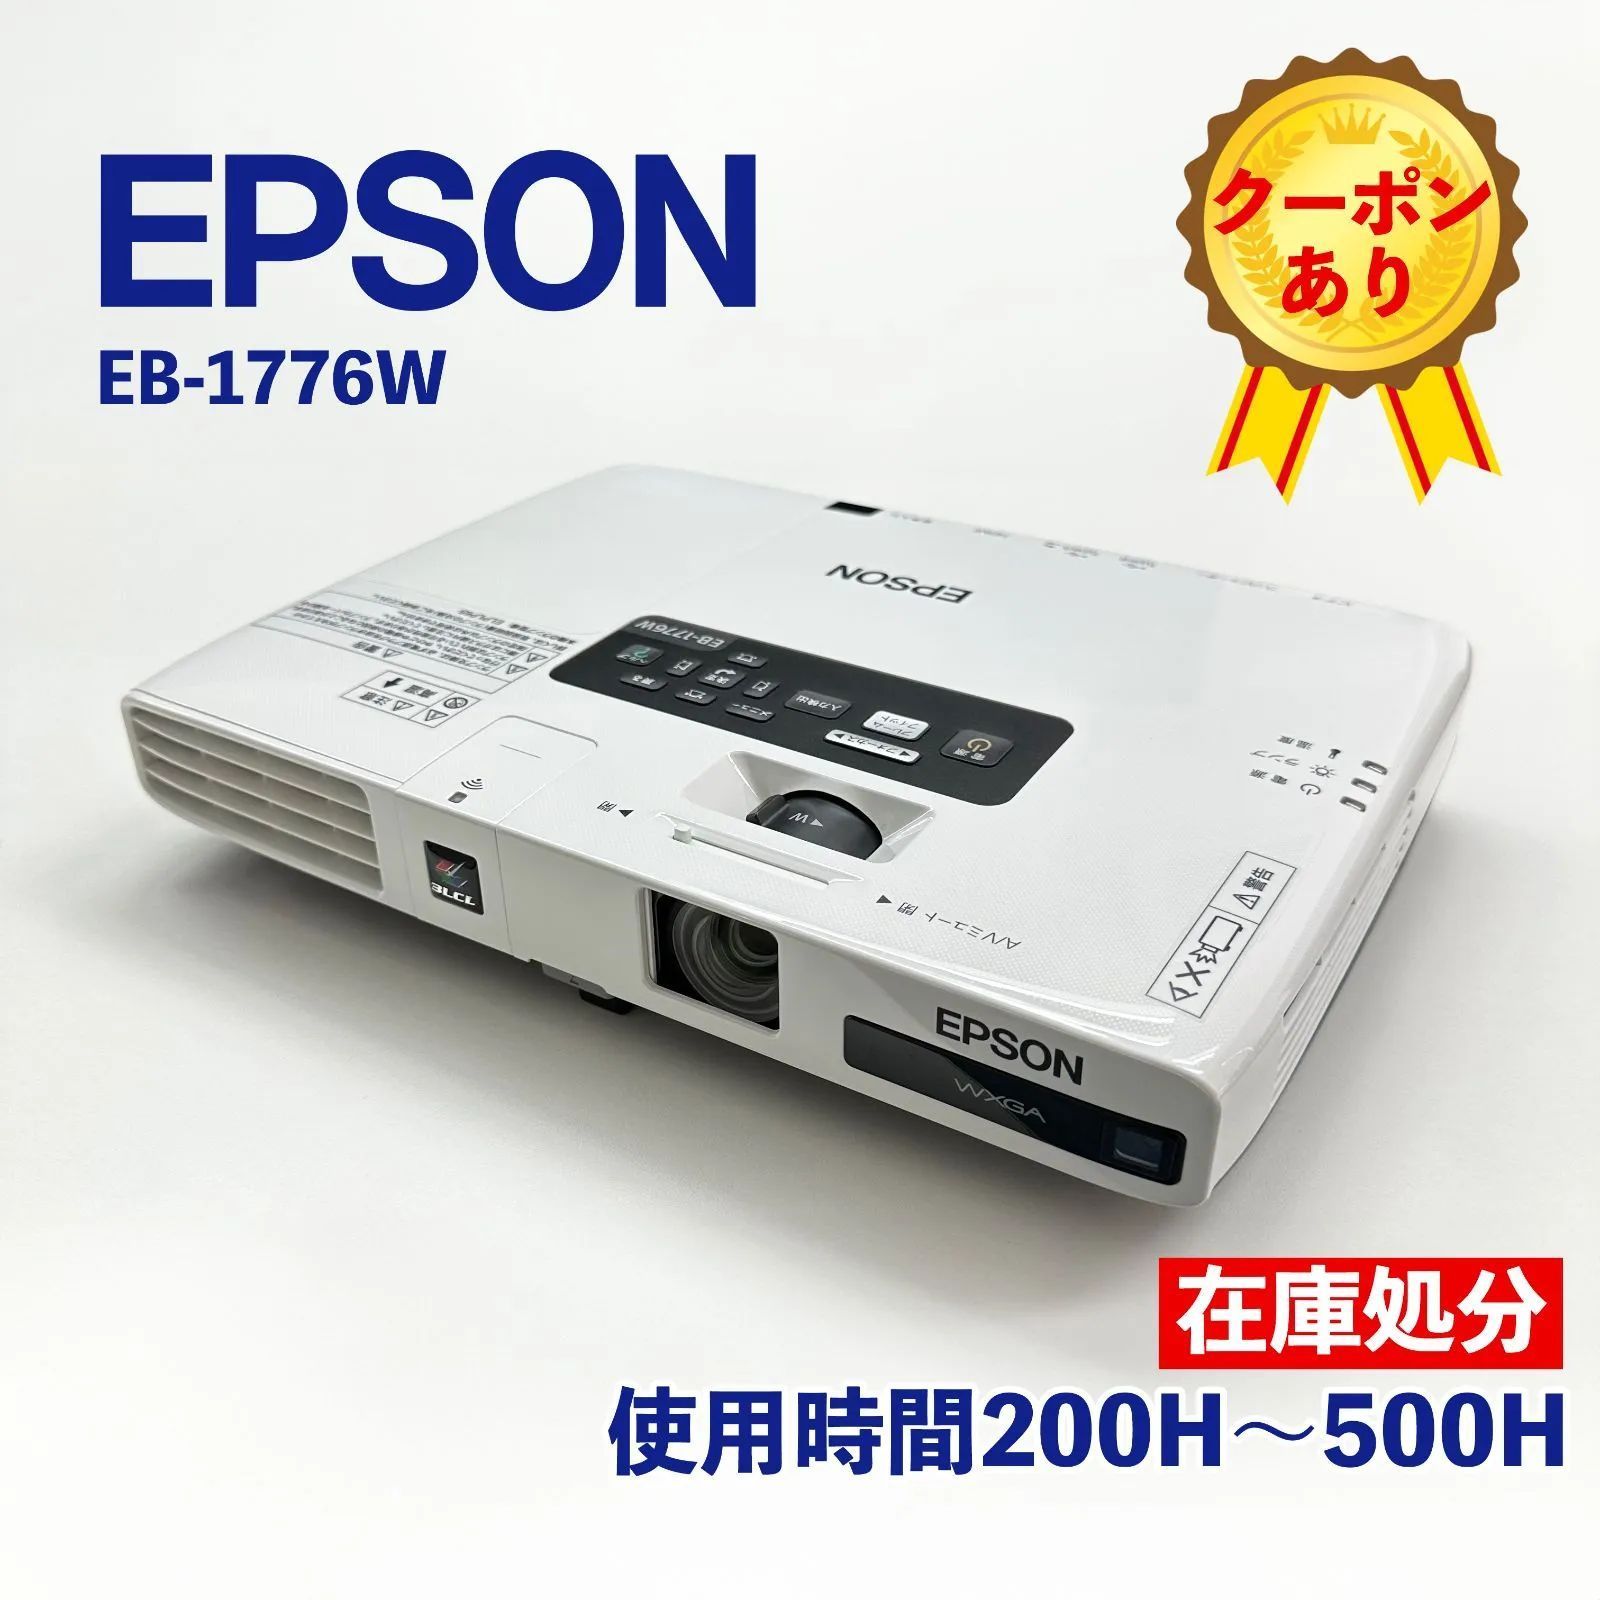 SALE正規品[動作OK] EPSON エプソン スリムビジネスビジネスプロジェクター EB-1770W ランプ点灯時間 261H バッグ他 付属品多数 本体